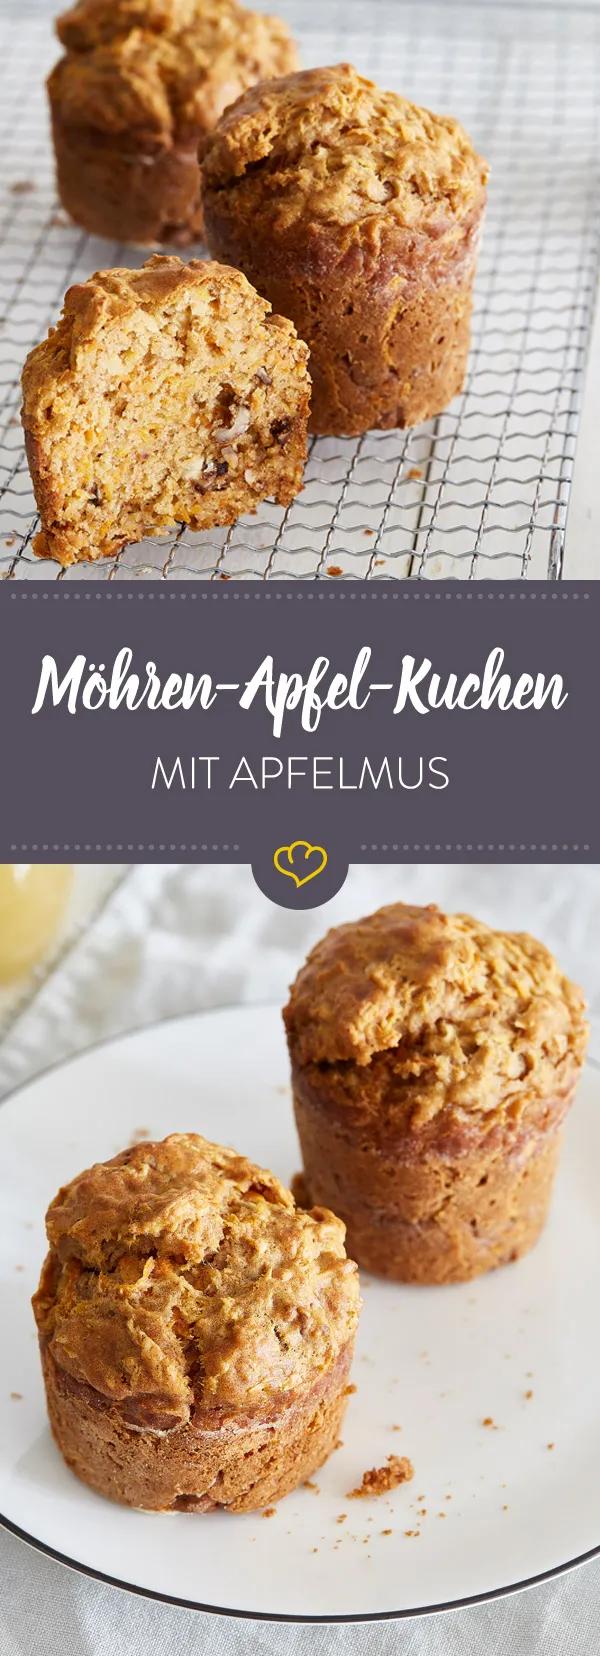 Apfel-Möhren-Küchlein mit Apfelmus | Rezept | Kuchen mit apfelmus ...